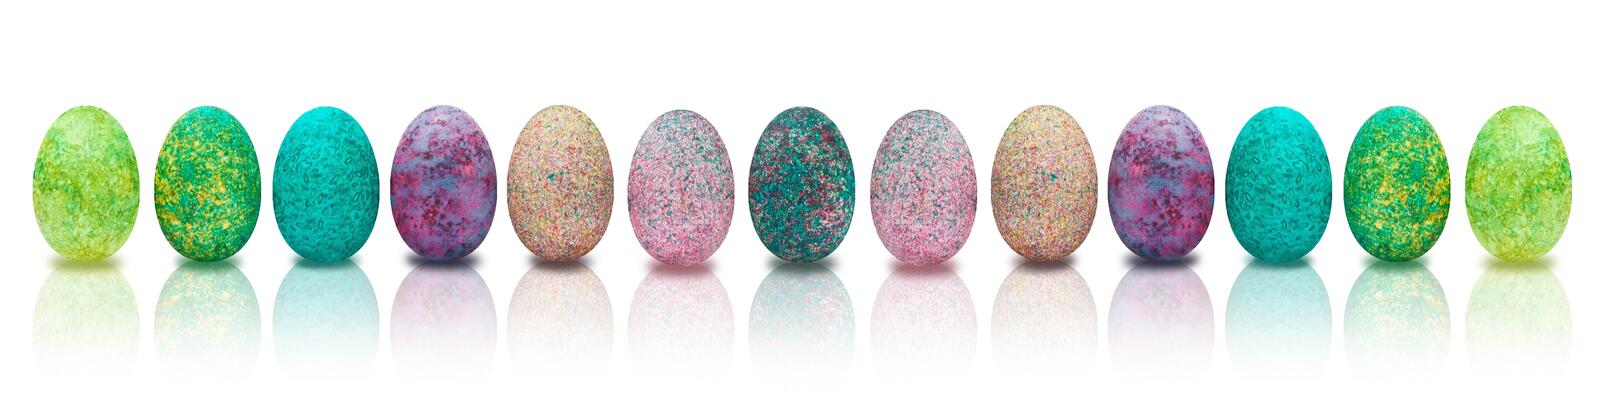 Бесплатное фото Раскрашенные цветные яйца на белом фоне